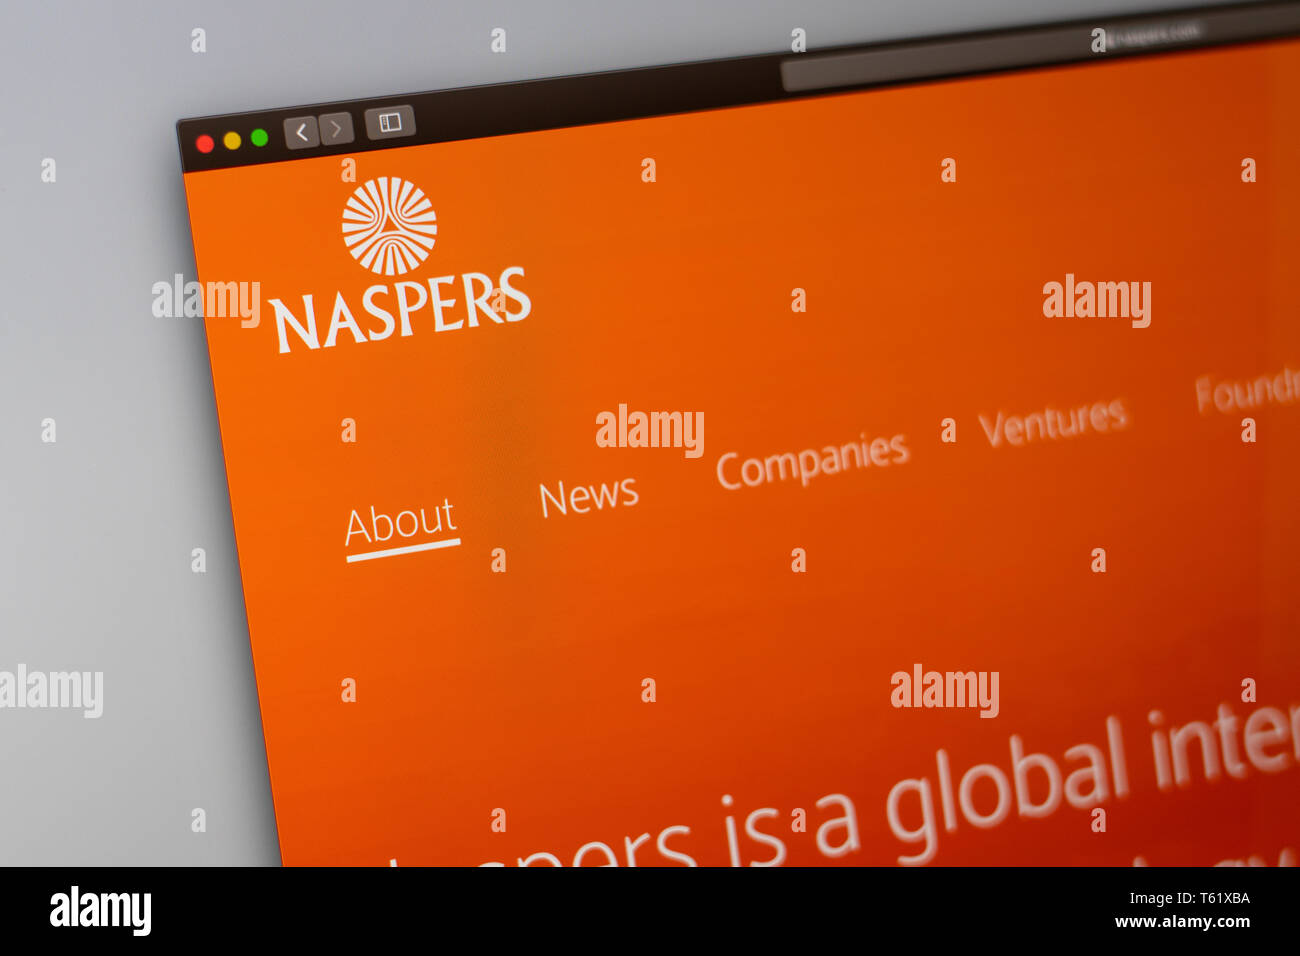 Naspers Startseite. Nahaufnahme von Naspers Logo. Kann als illustrative für Medien, Marketing oder Business Konzept verwendet werden. Stockfoto